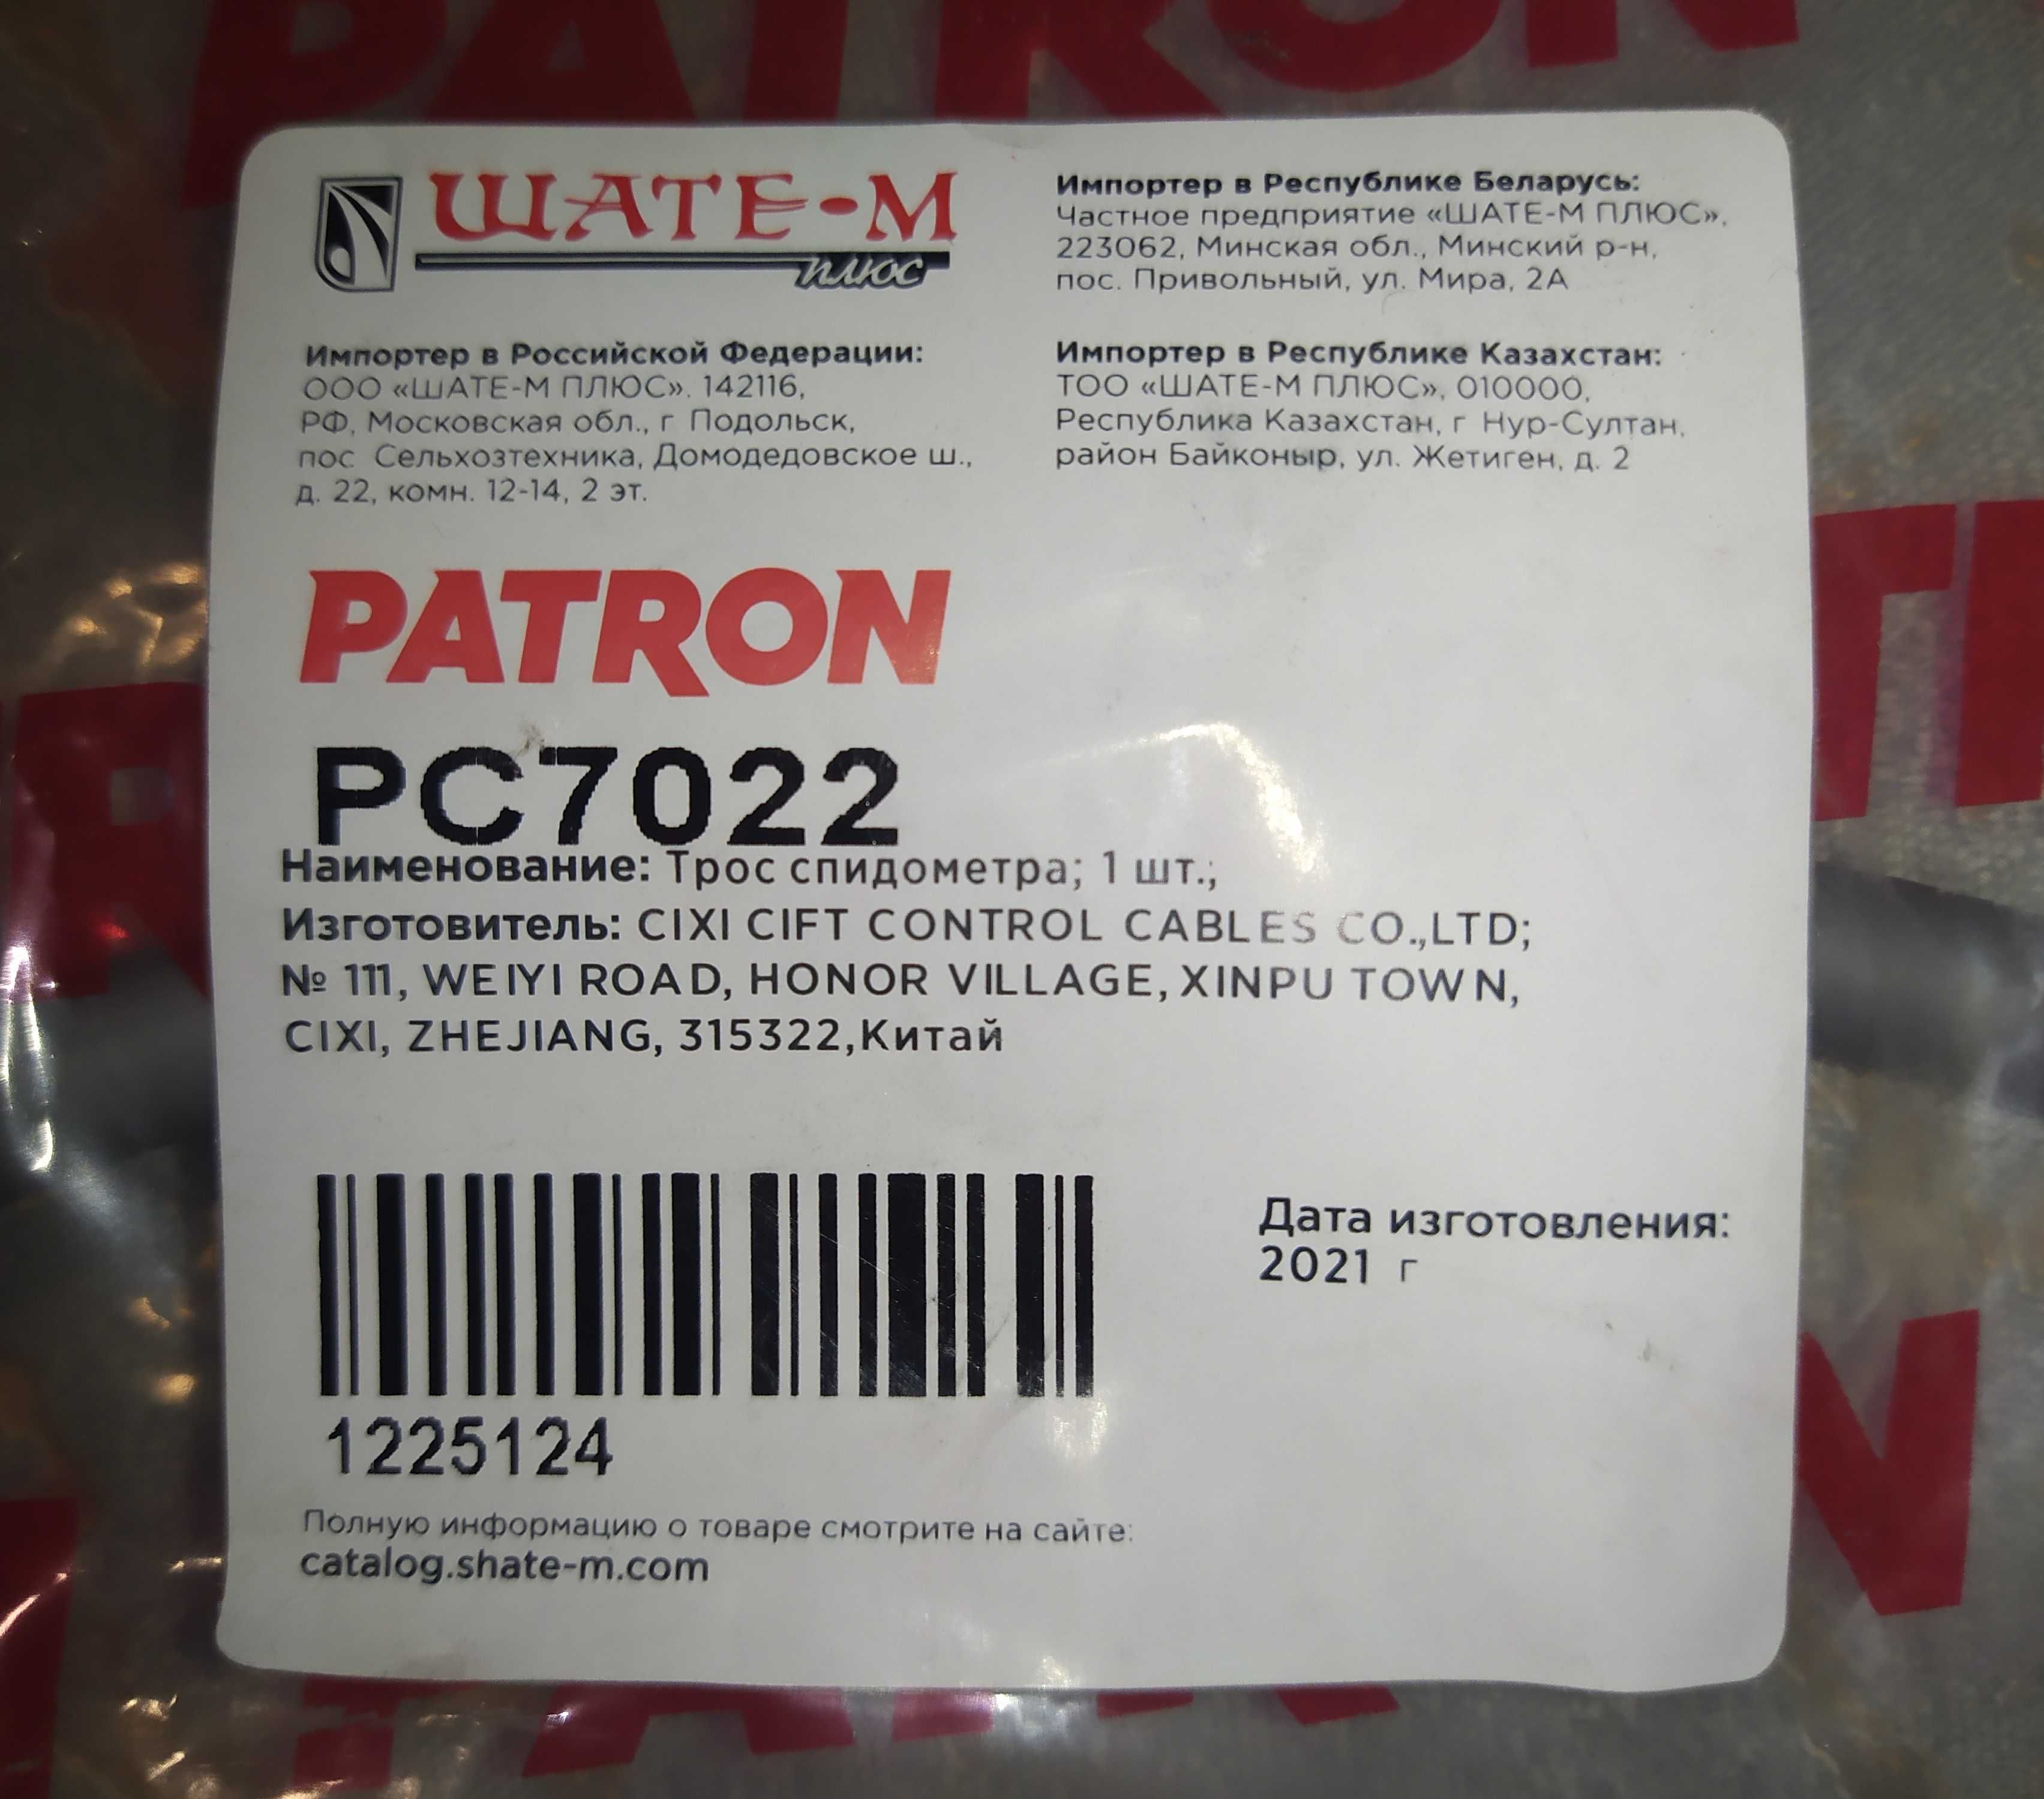 Трос спидометра OPEL TIGRA PATRON PC7022 - PATRON. ДОСТАВКА яндексом.